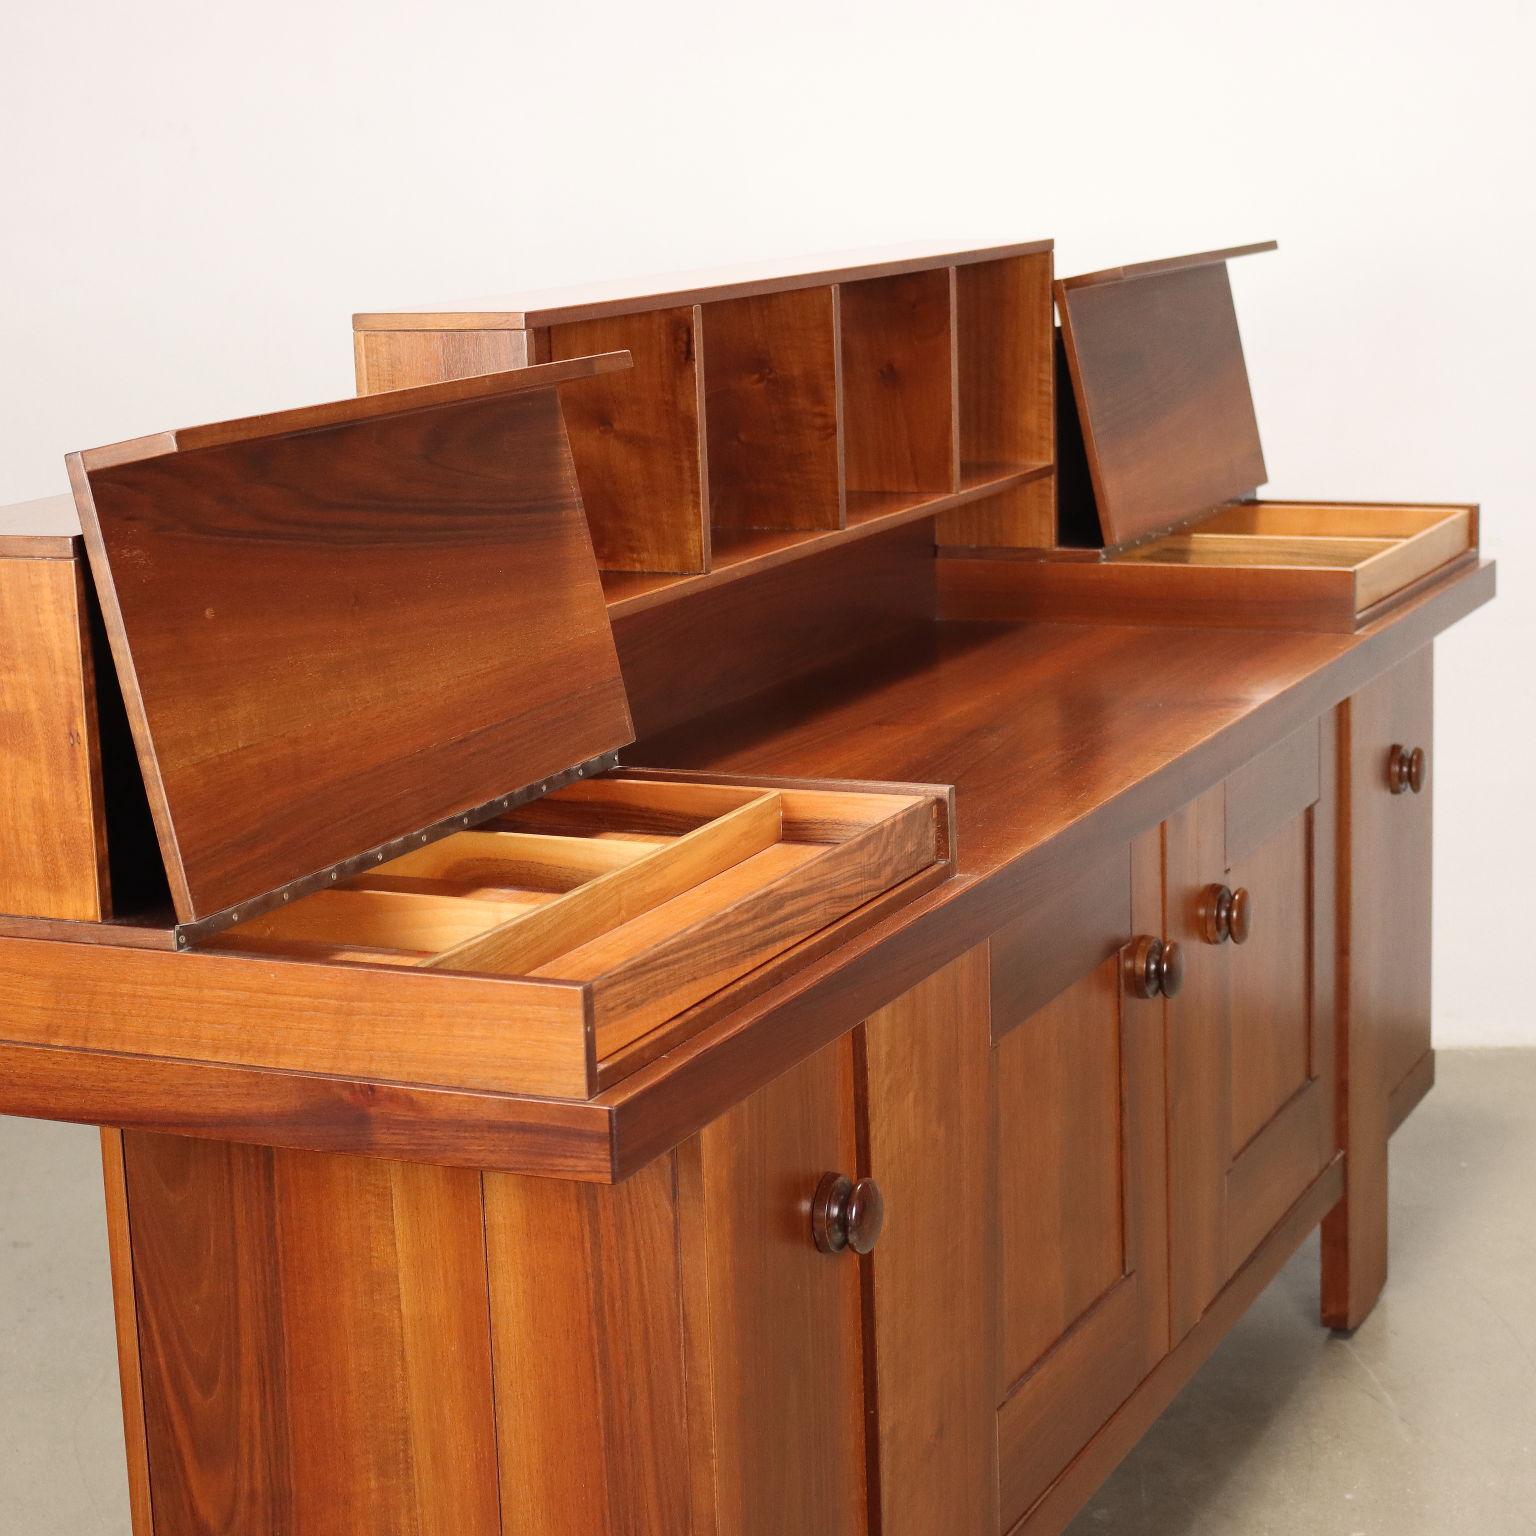 Mid-Century Modern Bernini Cabinet by S. Coppola Walnut Veneer Italy 60s-70s